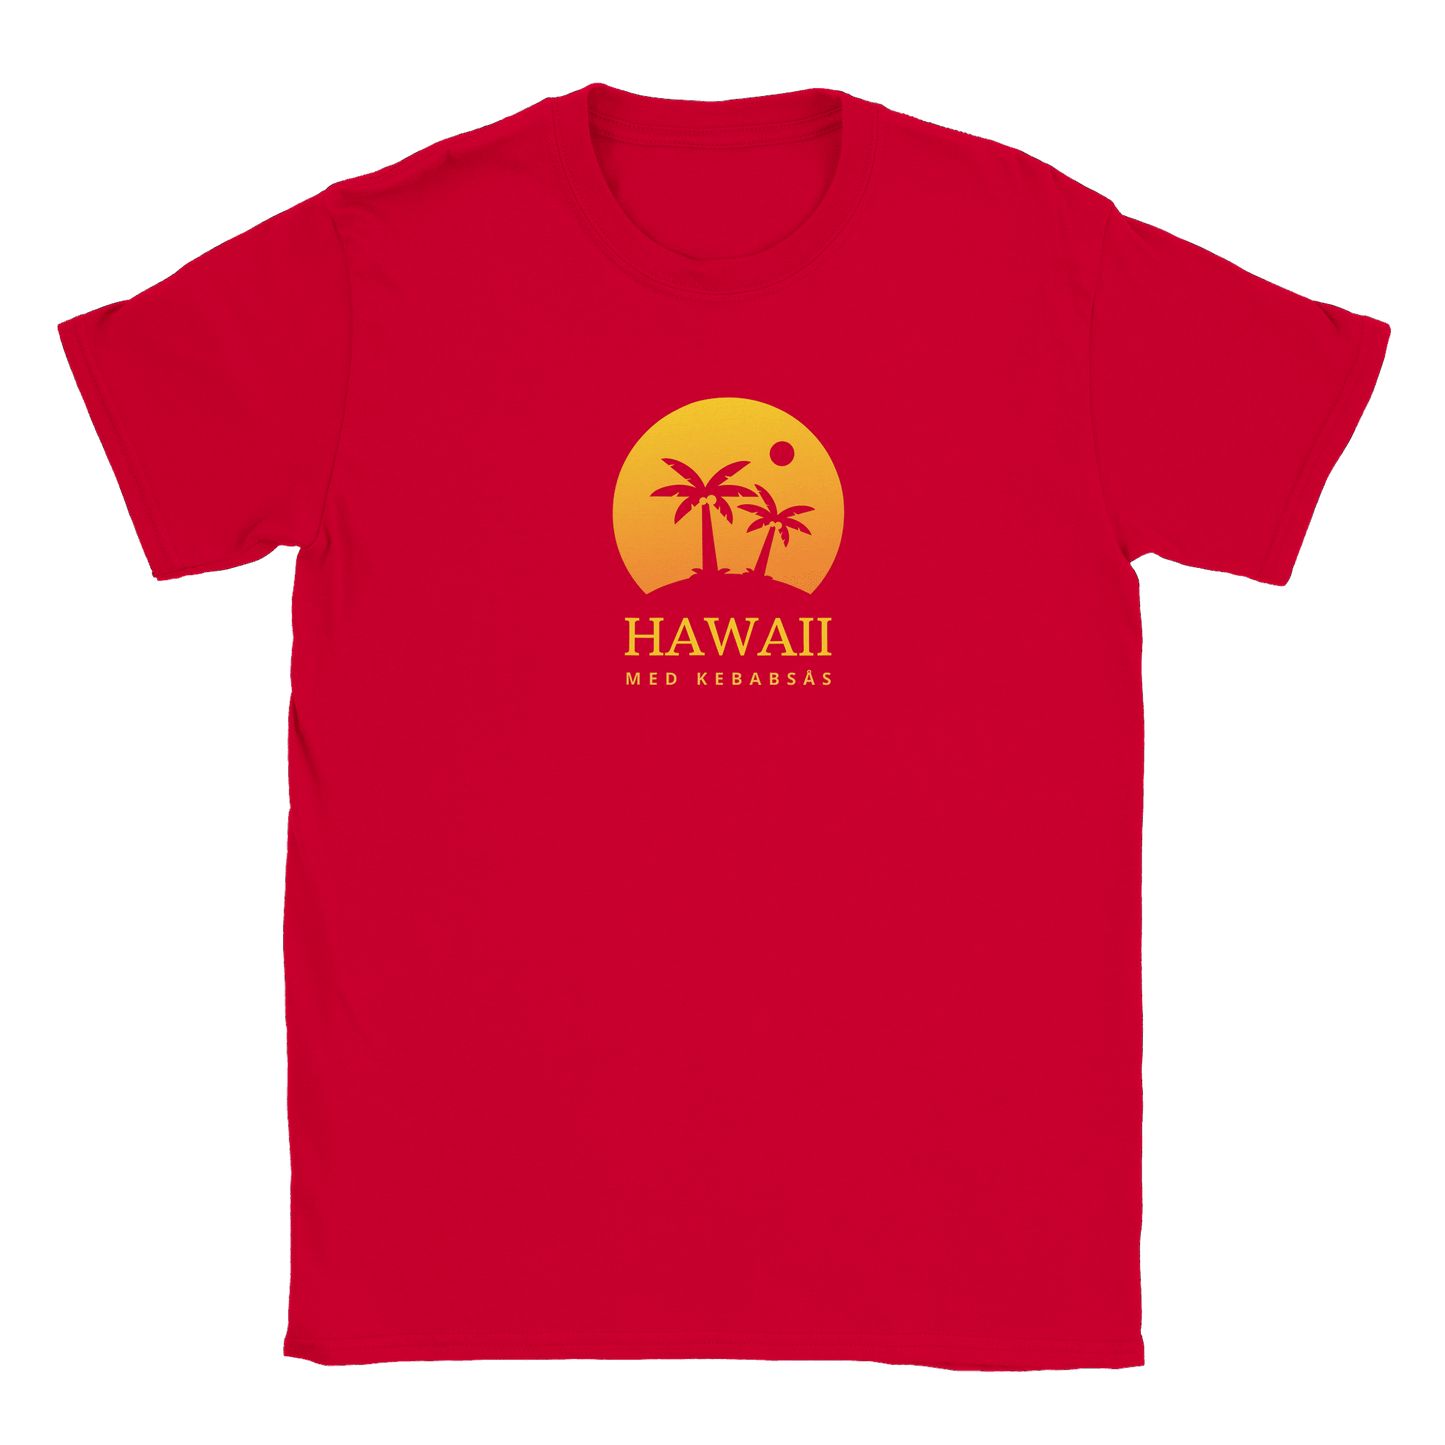 Hawaii med kebabsås - T-shirt Röd